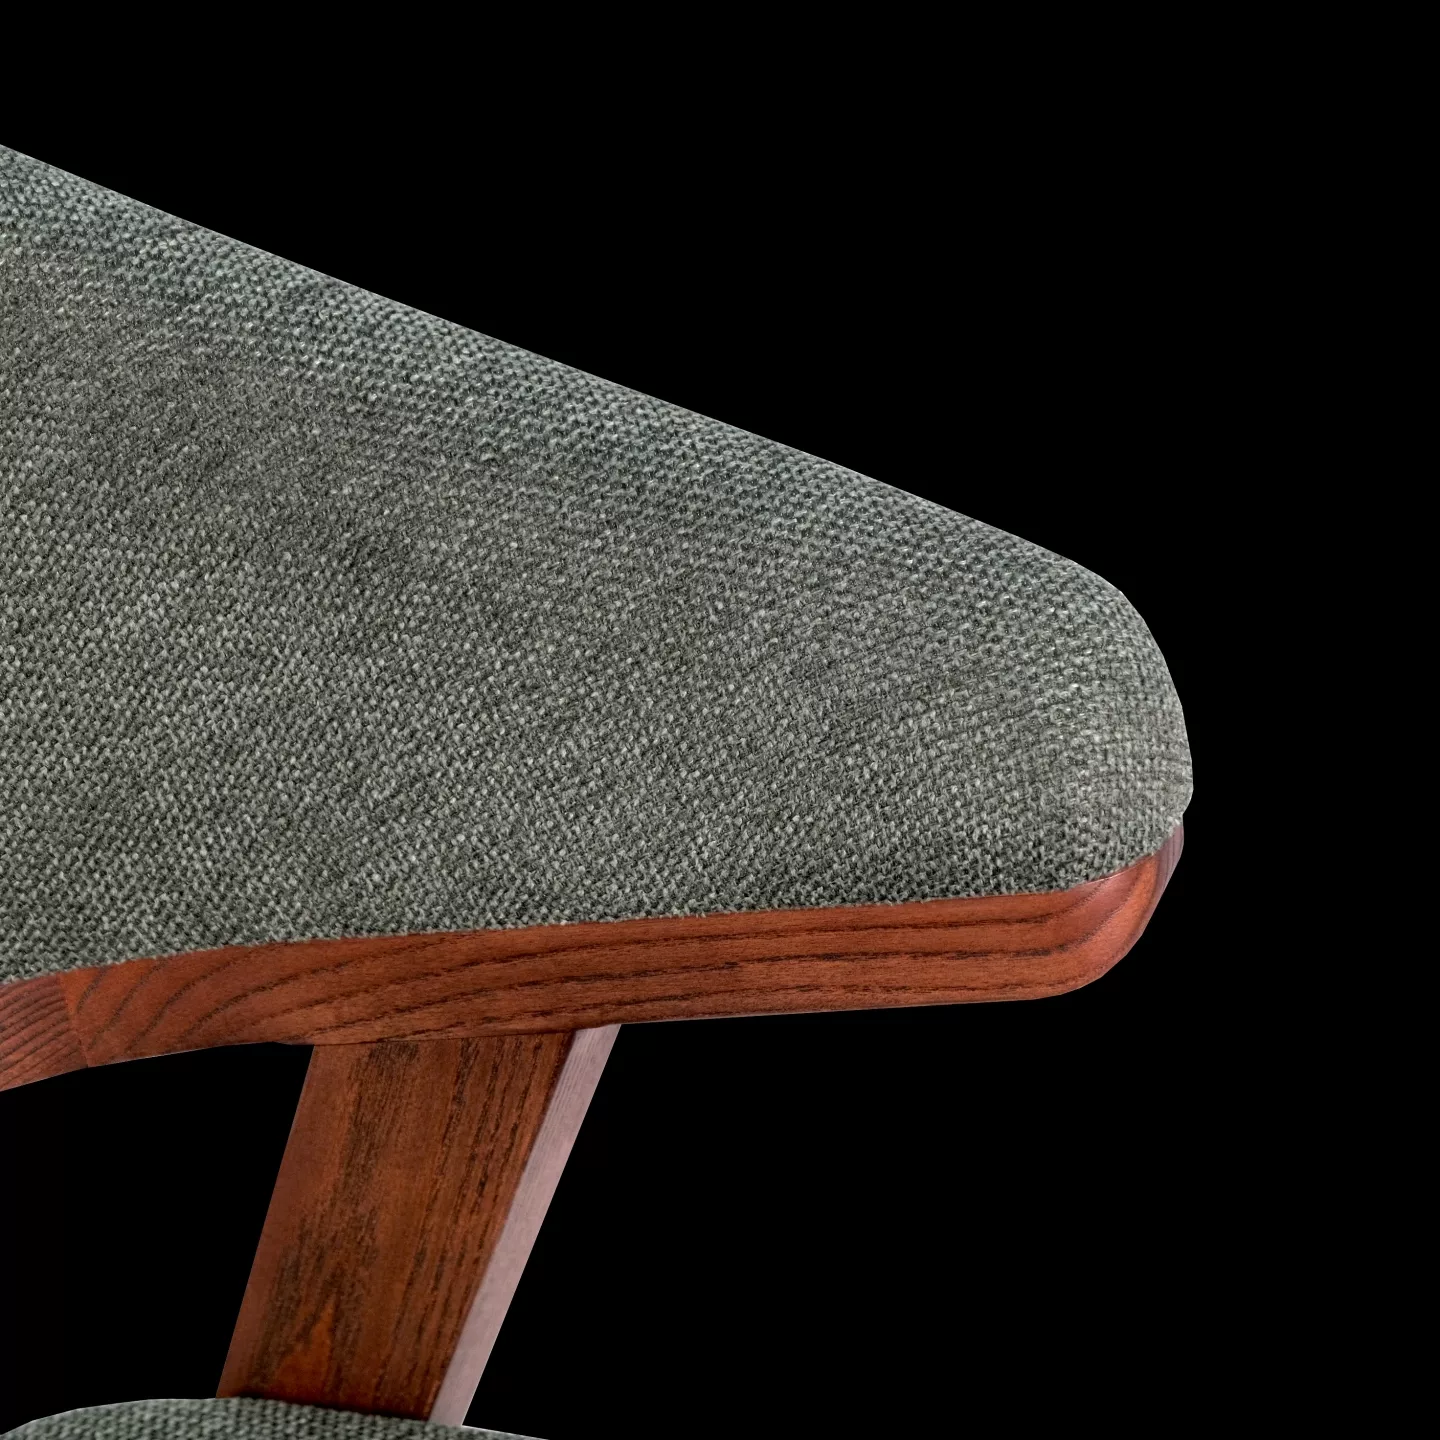 餐椅椅背細節拍攝照片,亞麻布材質